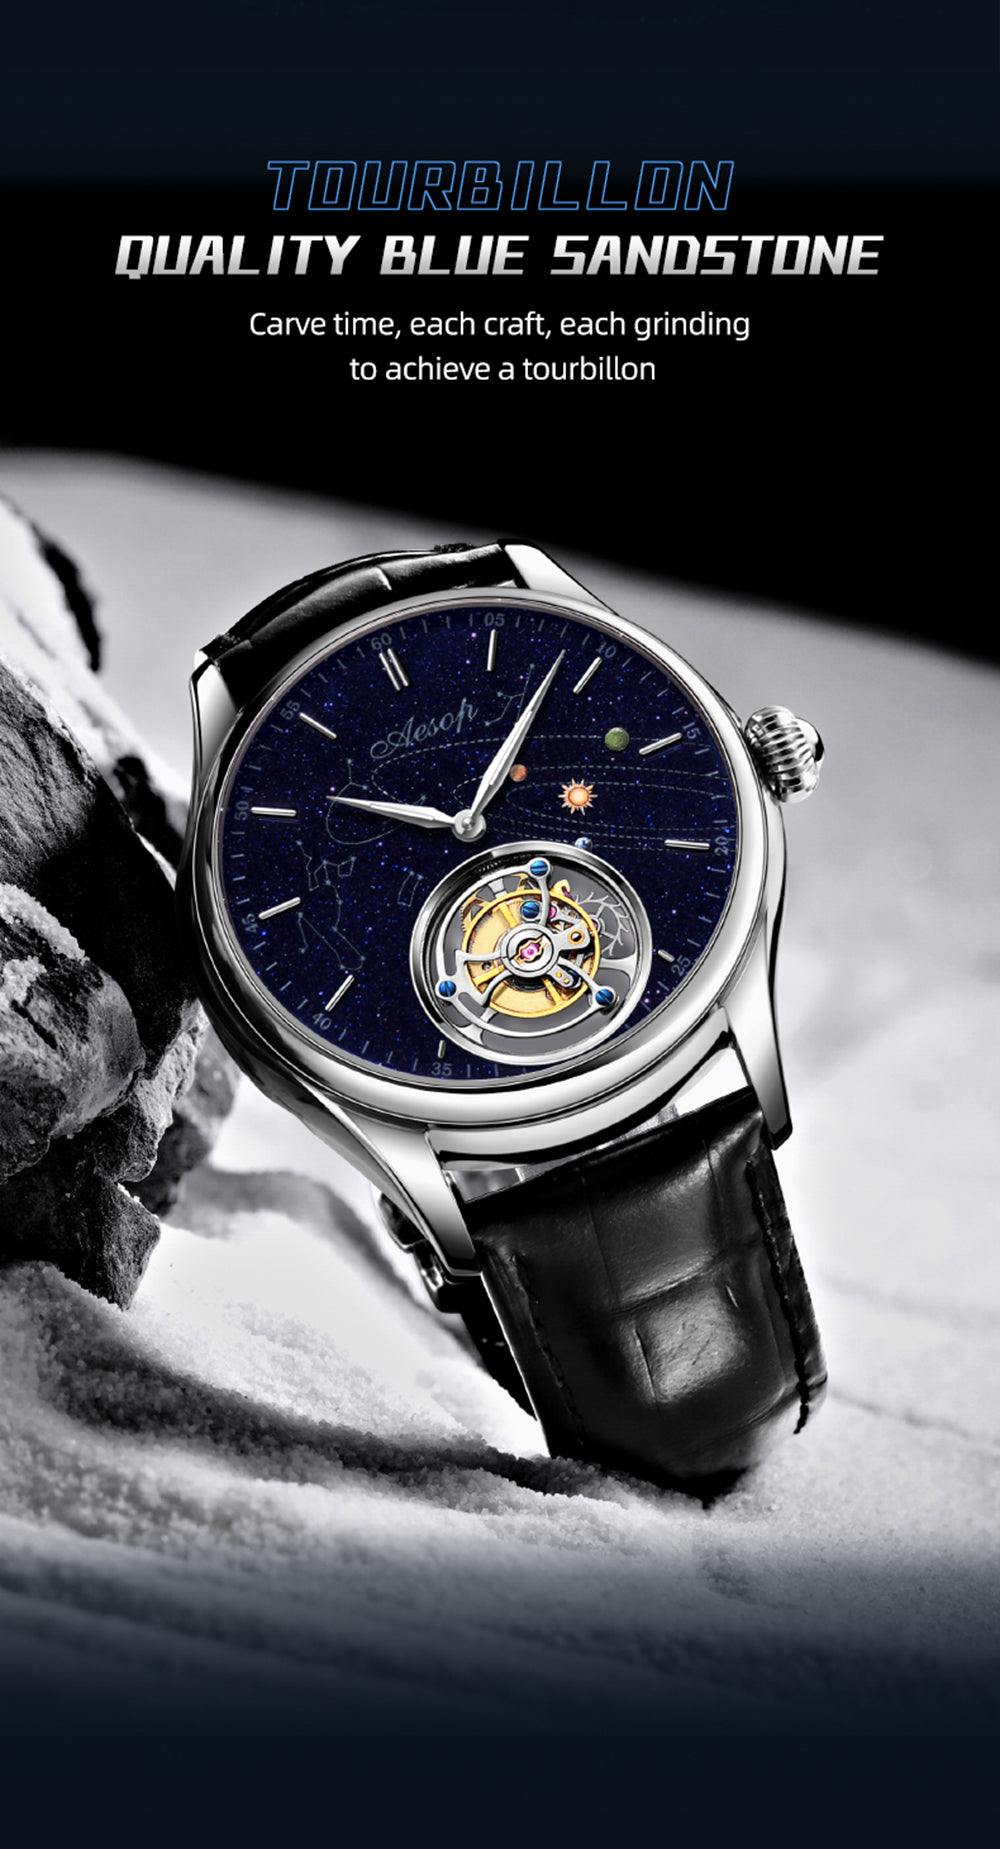 Aesop Galaxy Tourbillon Mechanical Watch